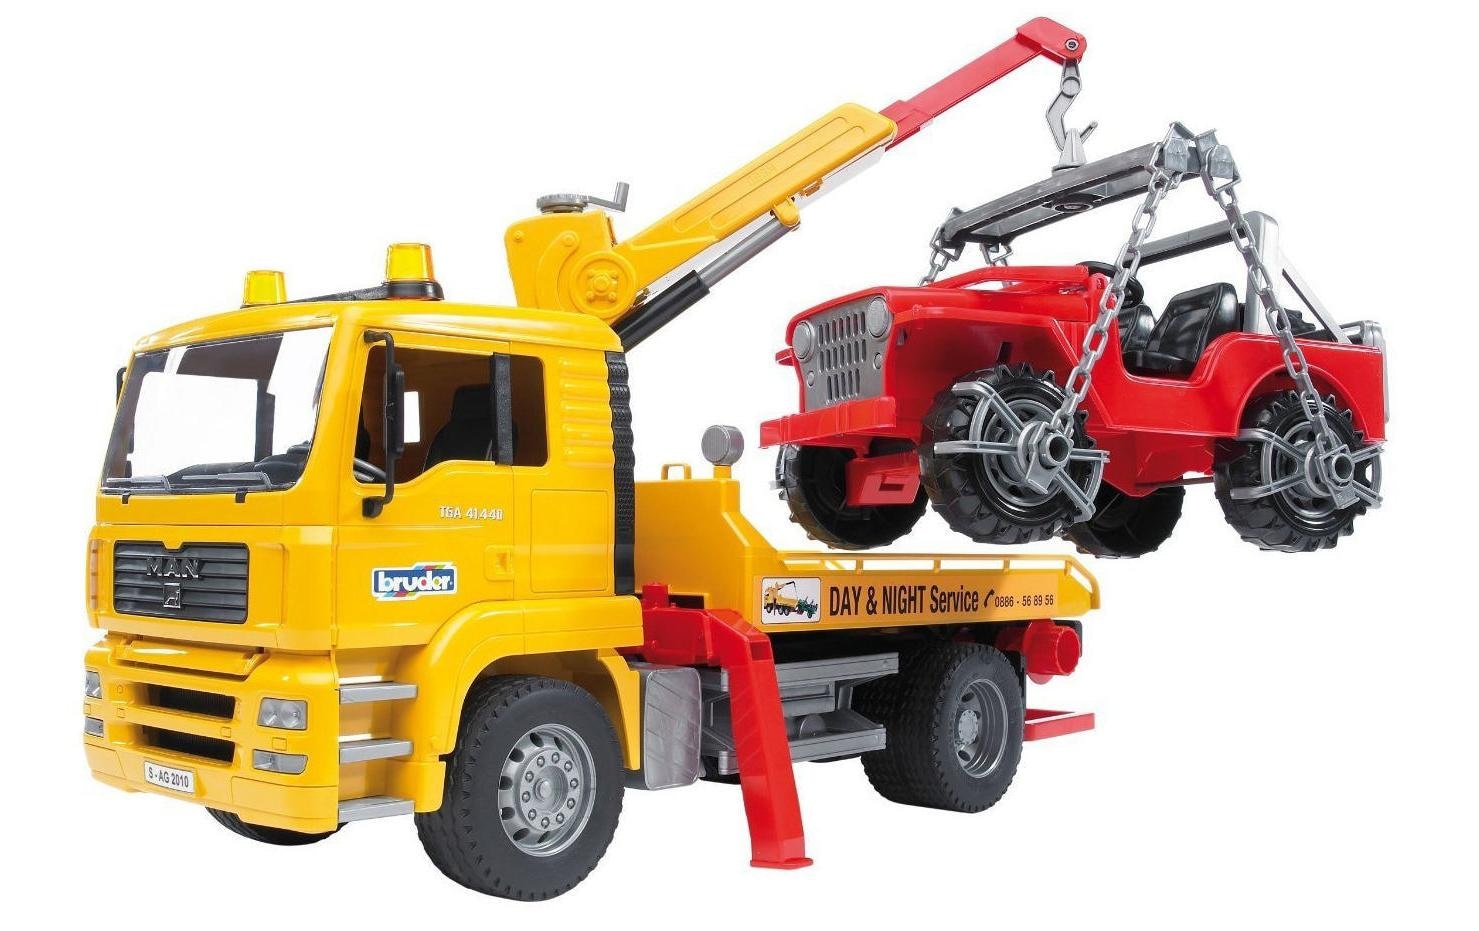 Spielzeug-Abschlepper »Lastwagen MAN TGA Abschlepp-LKW«